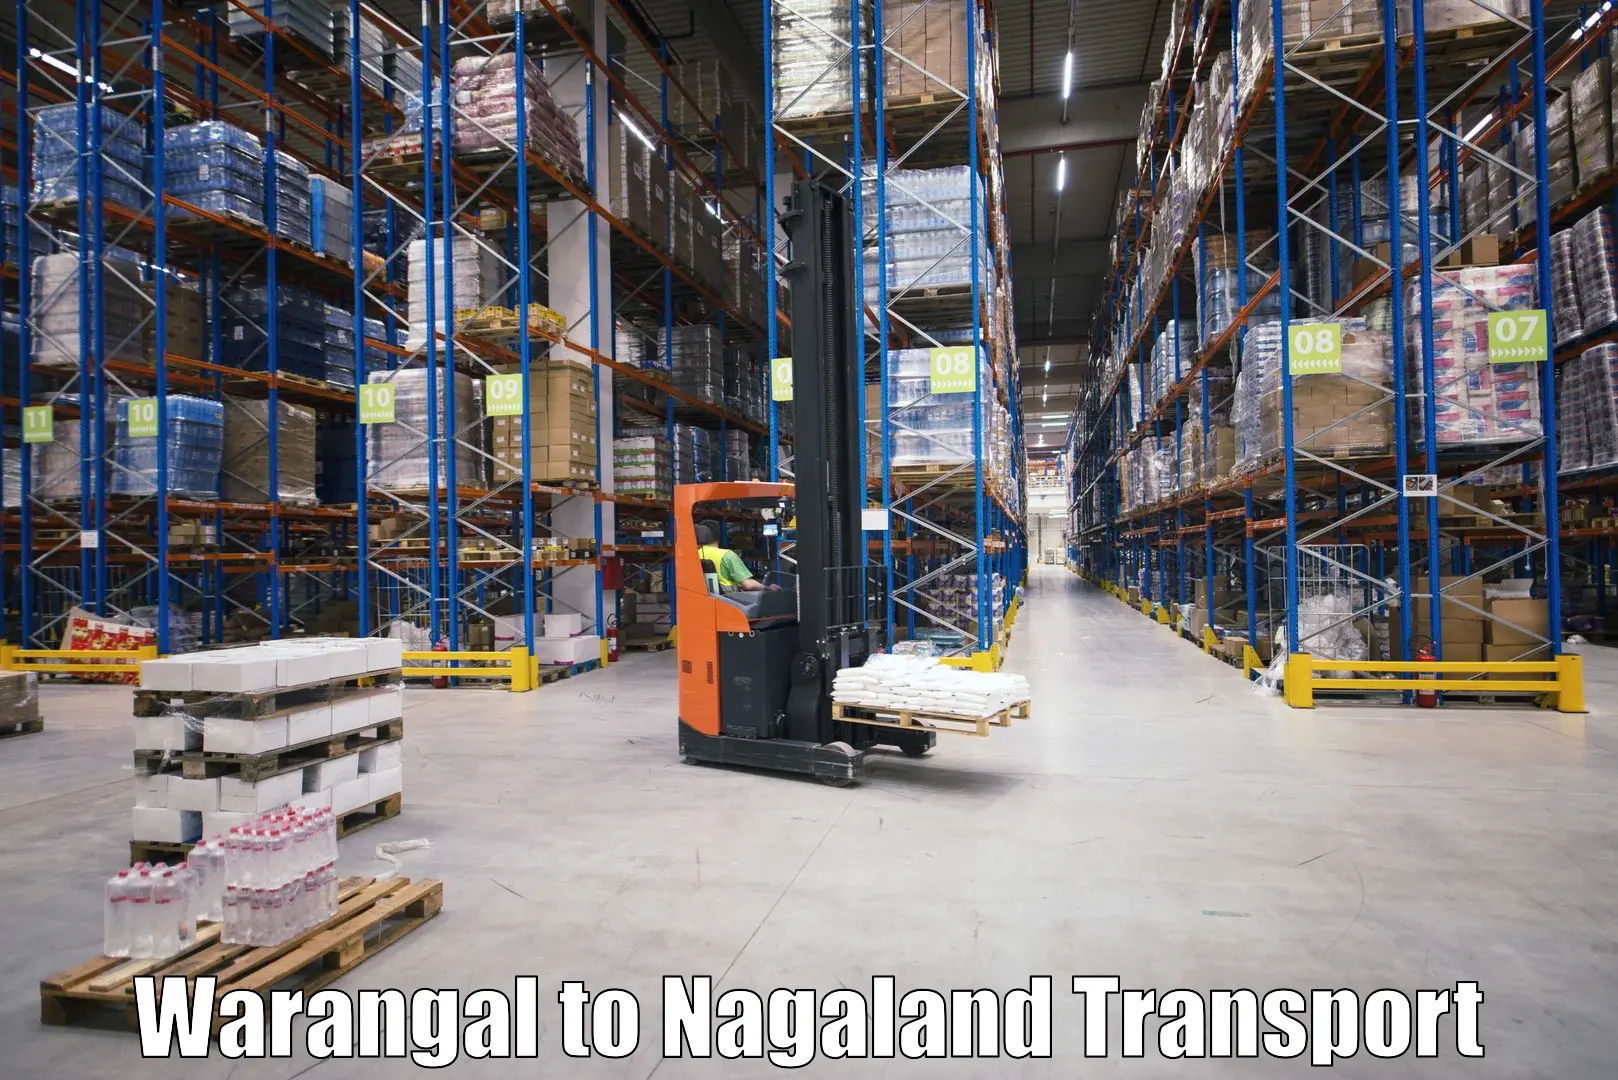 Express transport services Warangal to Nagaland